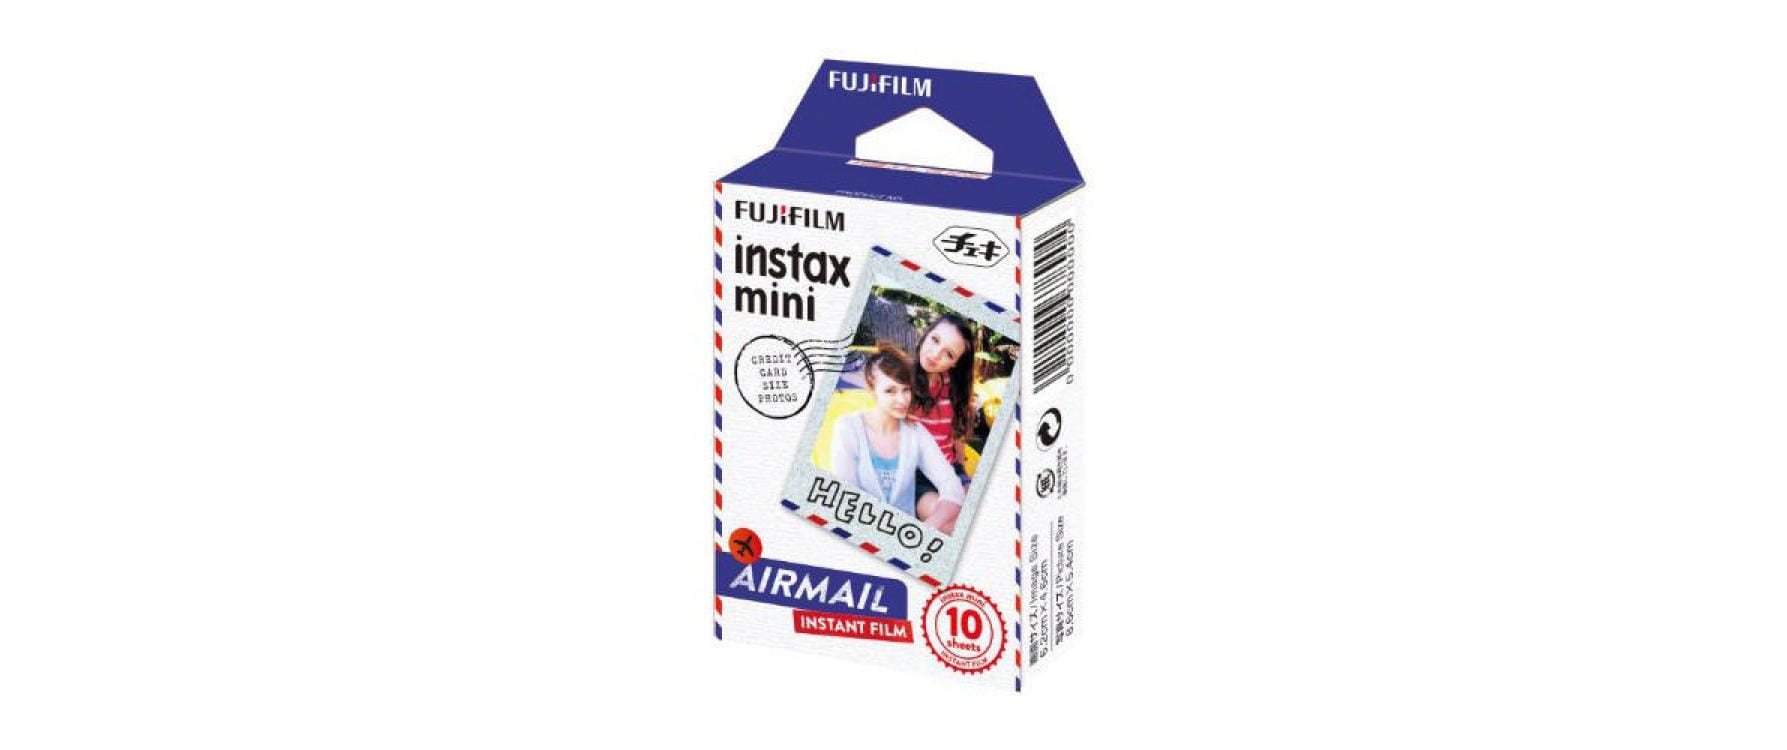 Fujifilm Sofortbildfilm Instax Mini Airmail 10 Blatt